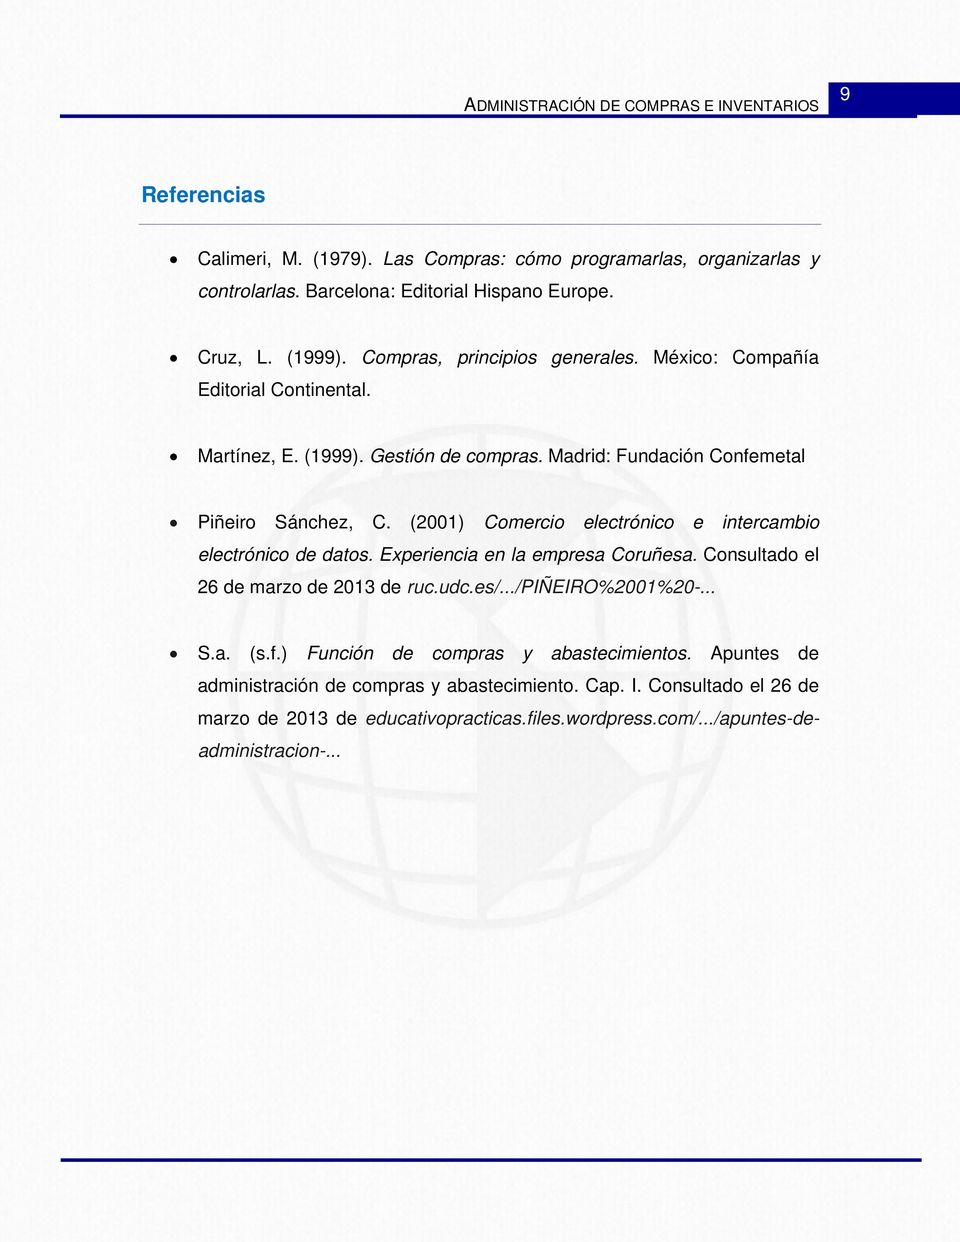 (2001) Comercio electrónico e intercambio electrónico de datos. Experiencia en la empresa Coruñesa. Consultado el 26 de marzo de 2013 de ruc.udc.es/.../piñeiro%2001%20-... S.a. (s.